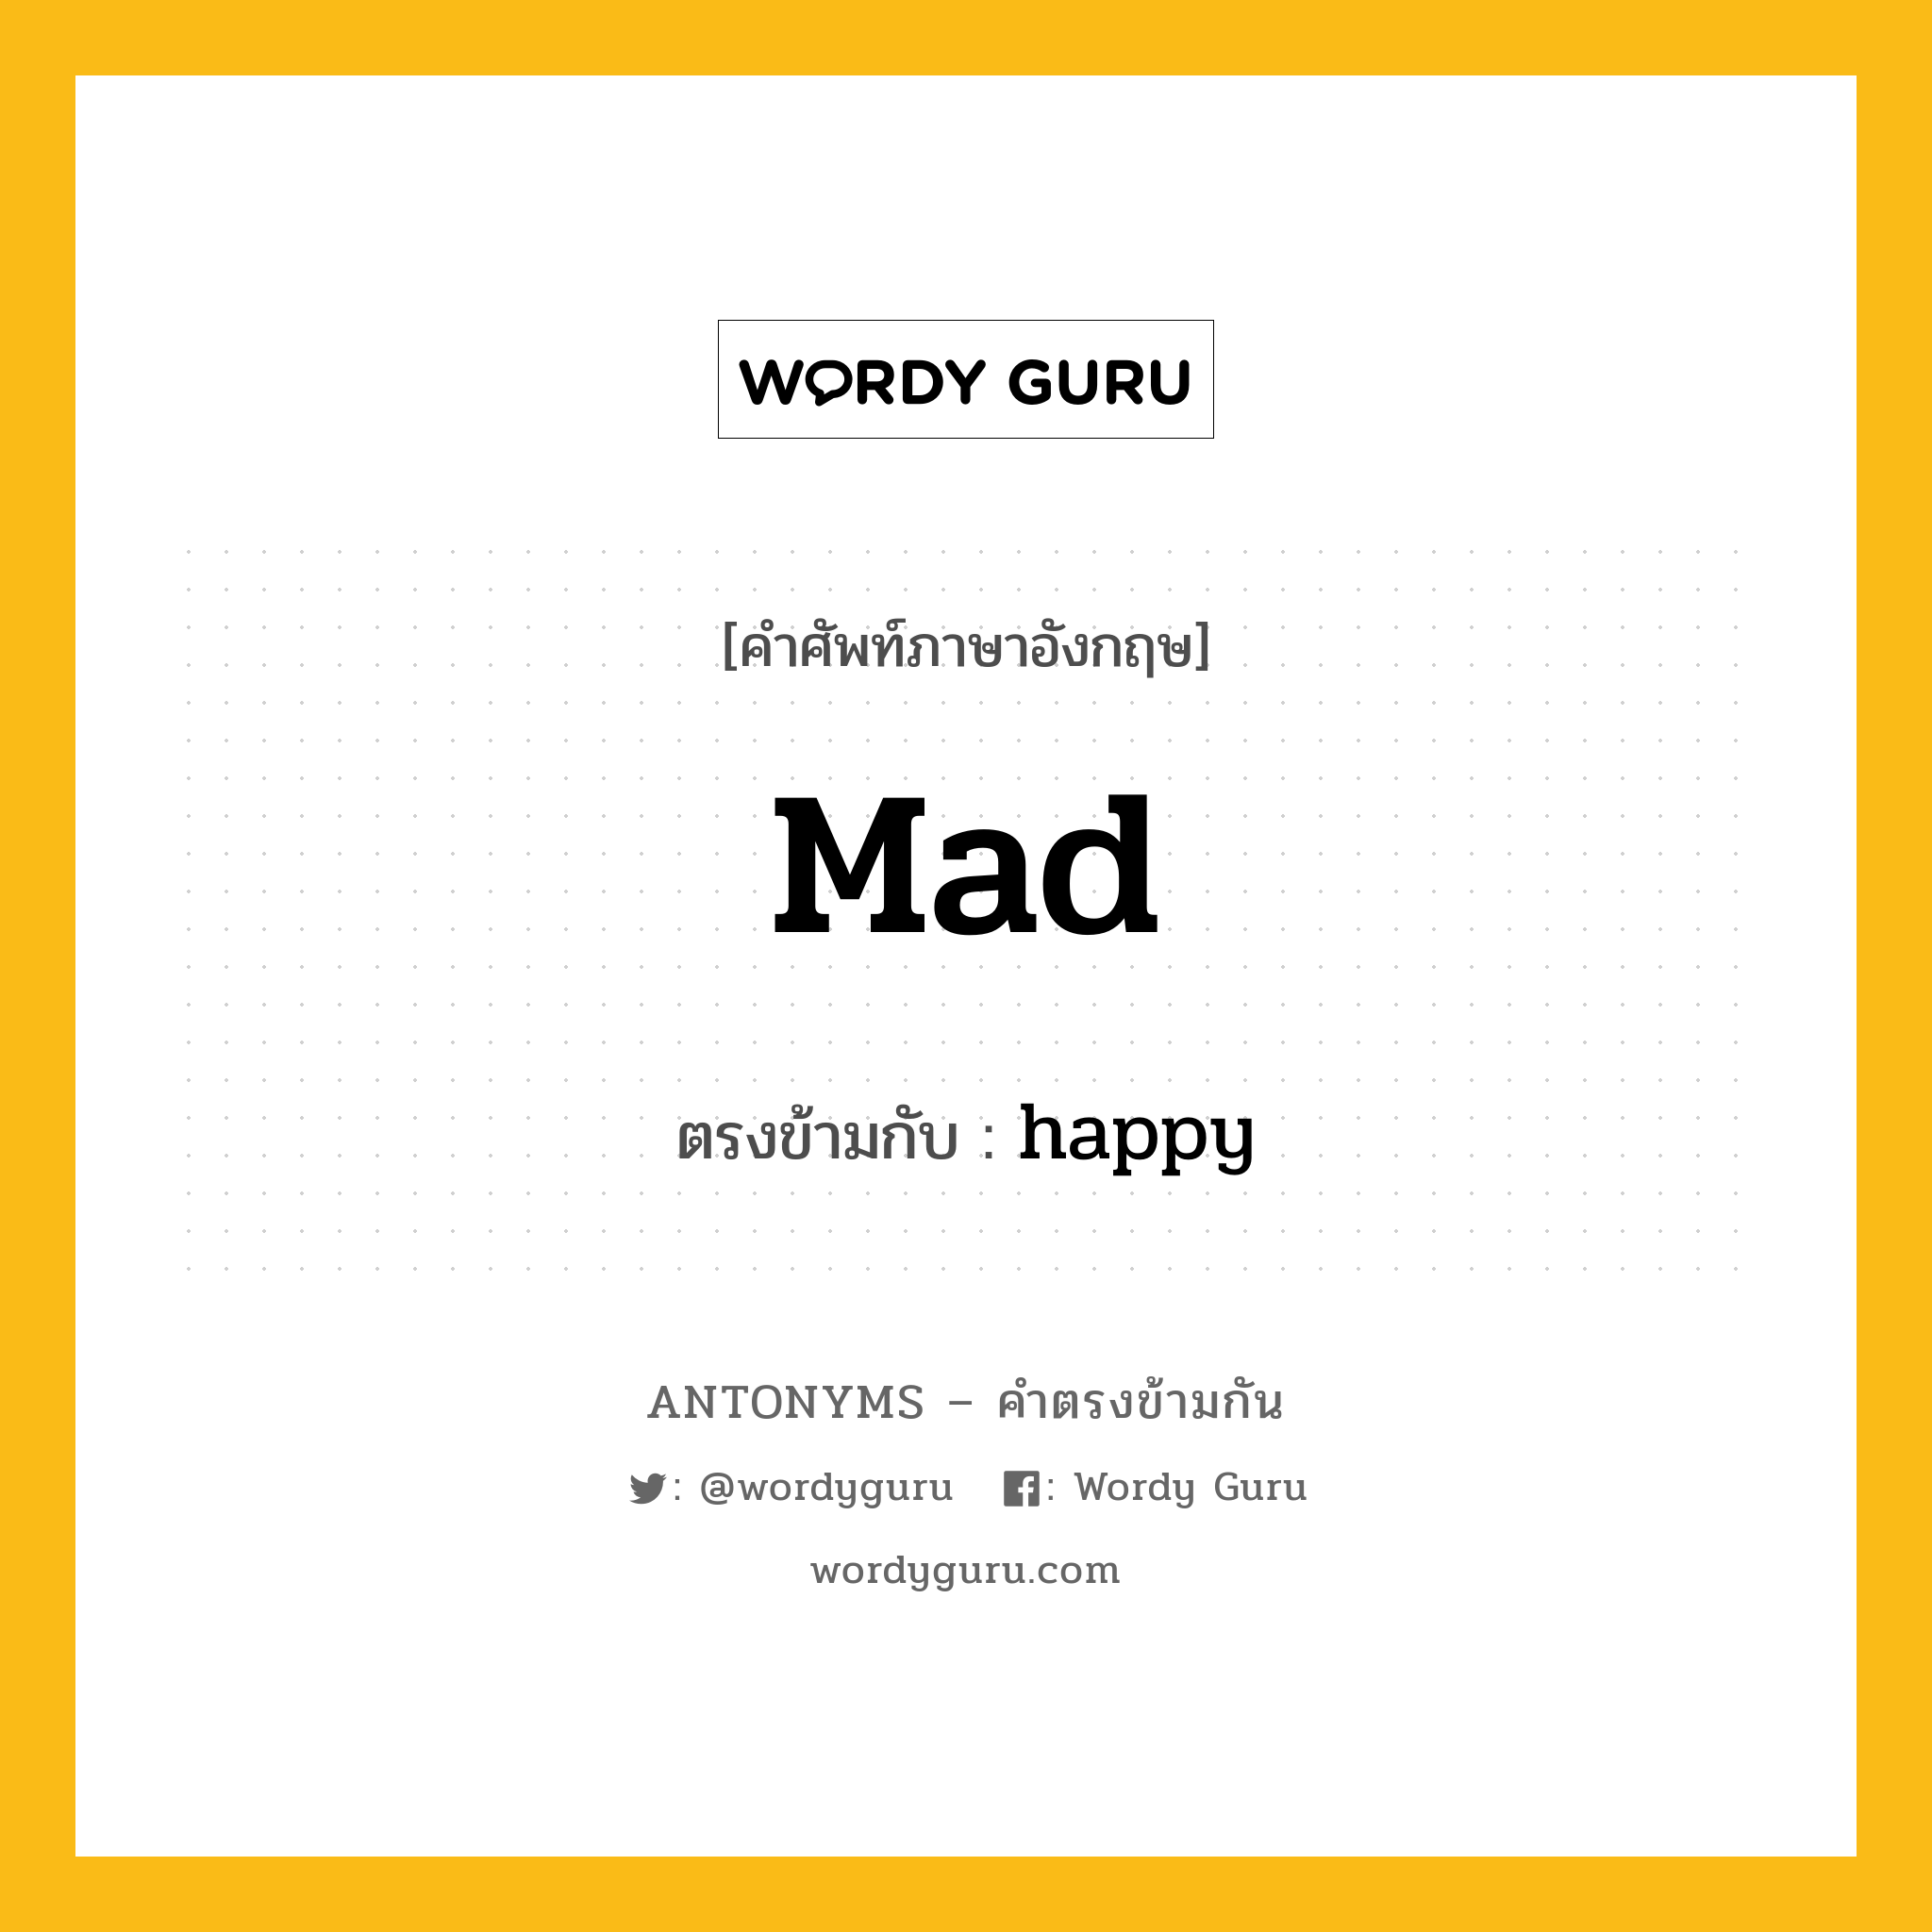 mad เป็นคำตรงข้ามกับคำไหนบ้าง?, คำศัพท์ภาษาอังกฤษ mad ตรงข้ามกับ happy หมวด happy